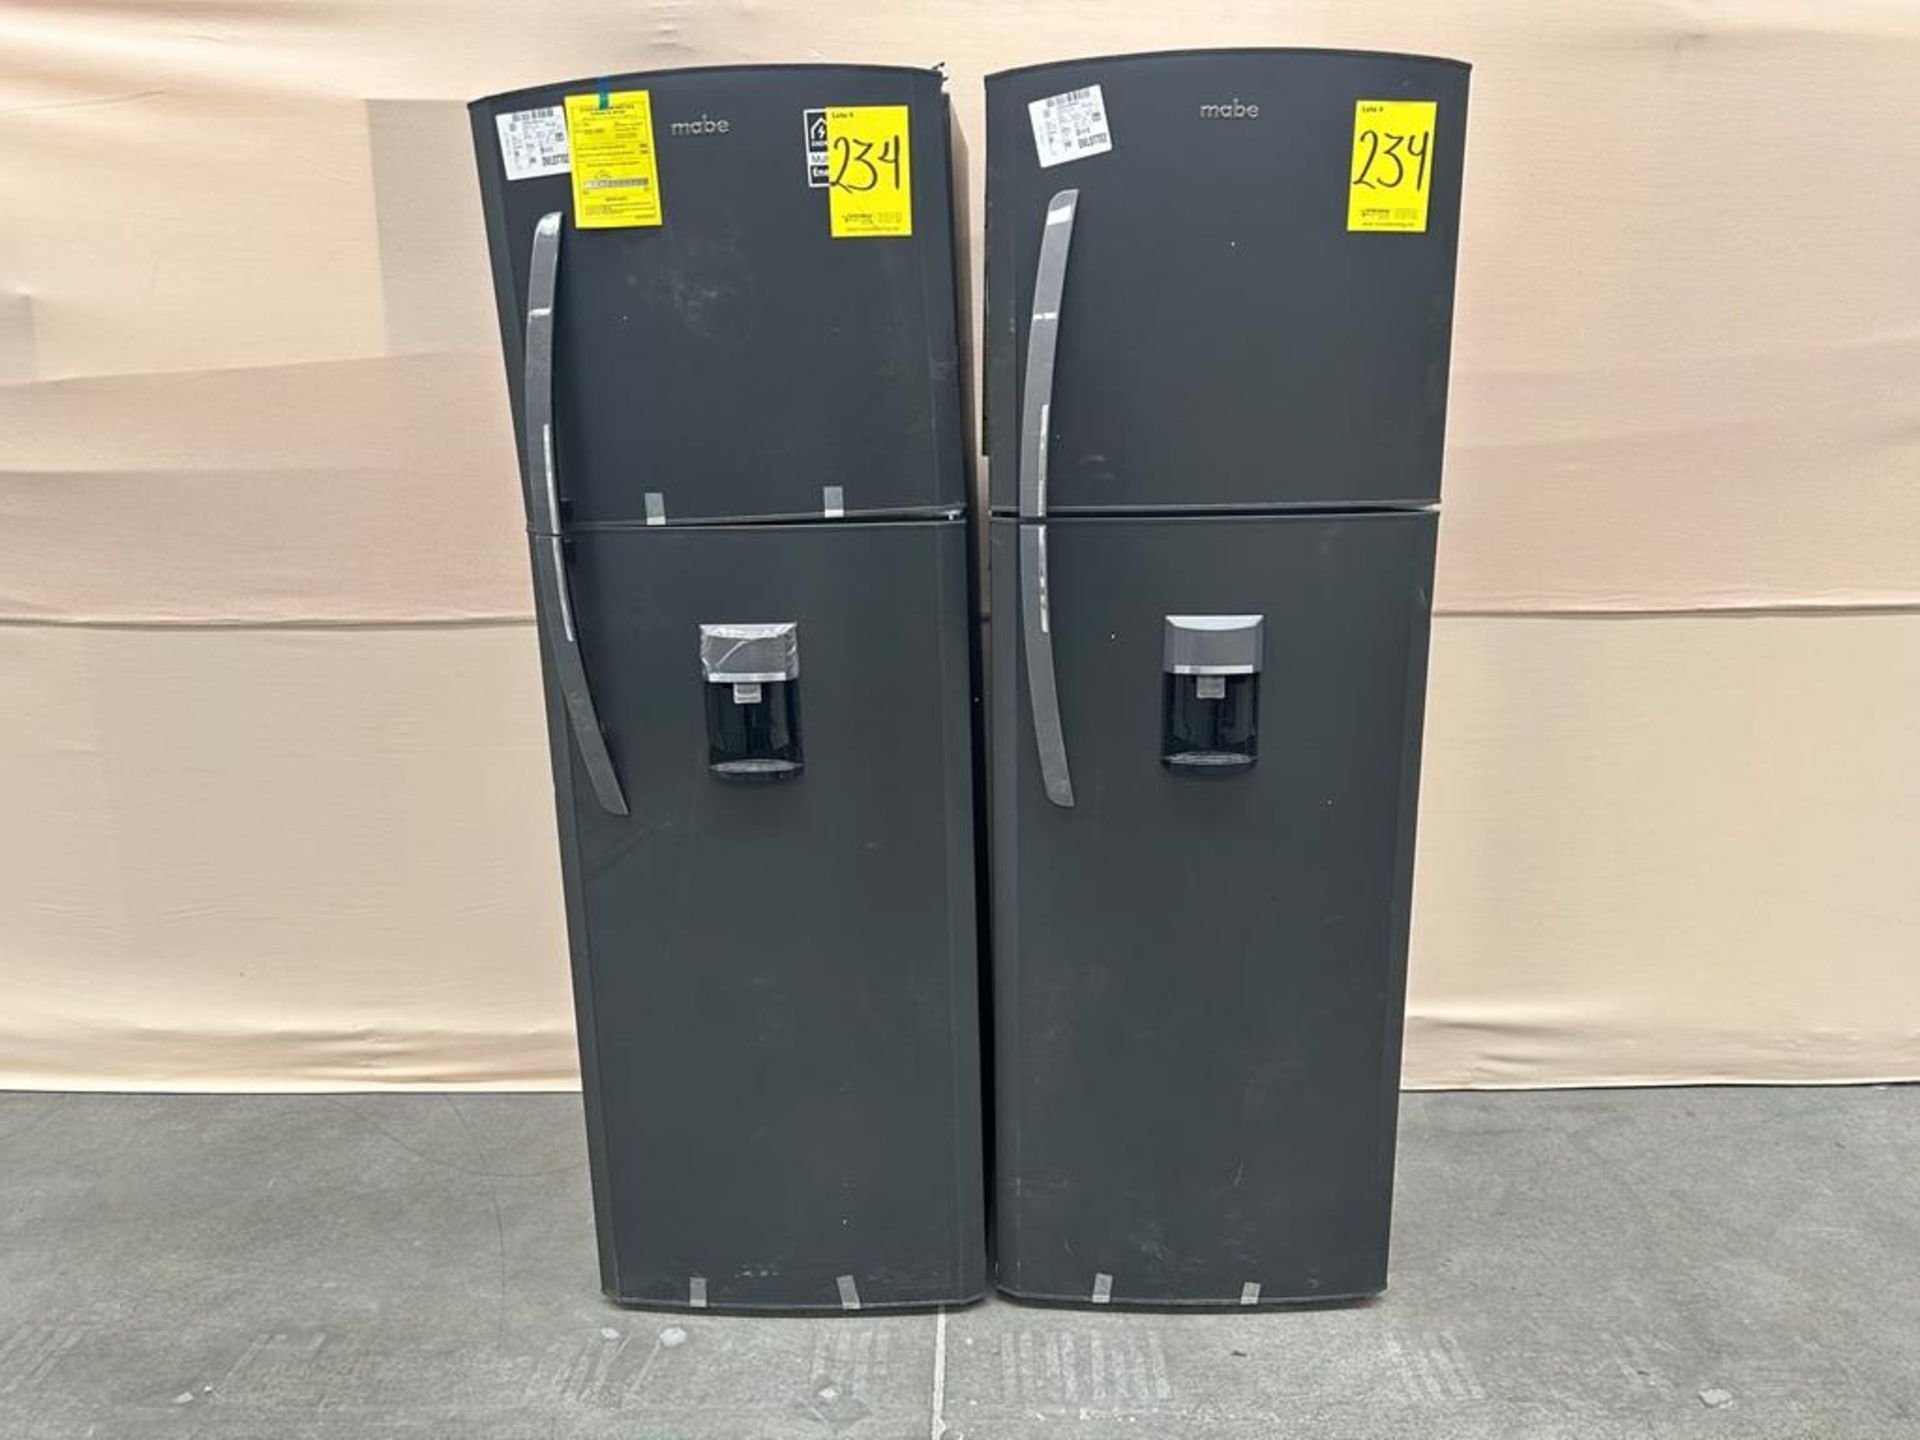 Lote de 2 refrigeradores contiene: Refrigerador con dispensador de agua Marca MABE, Modelo RMA300FJ